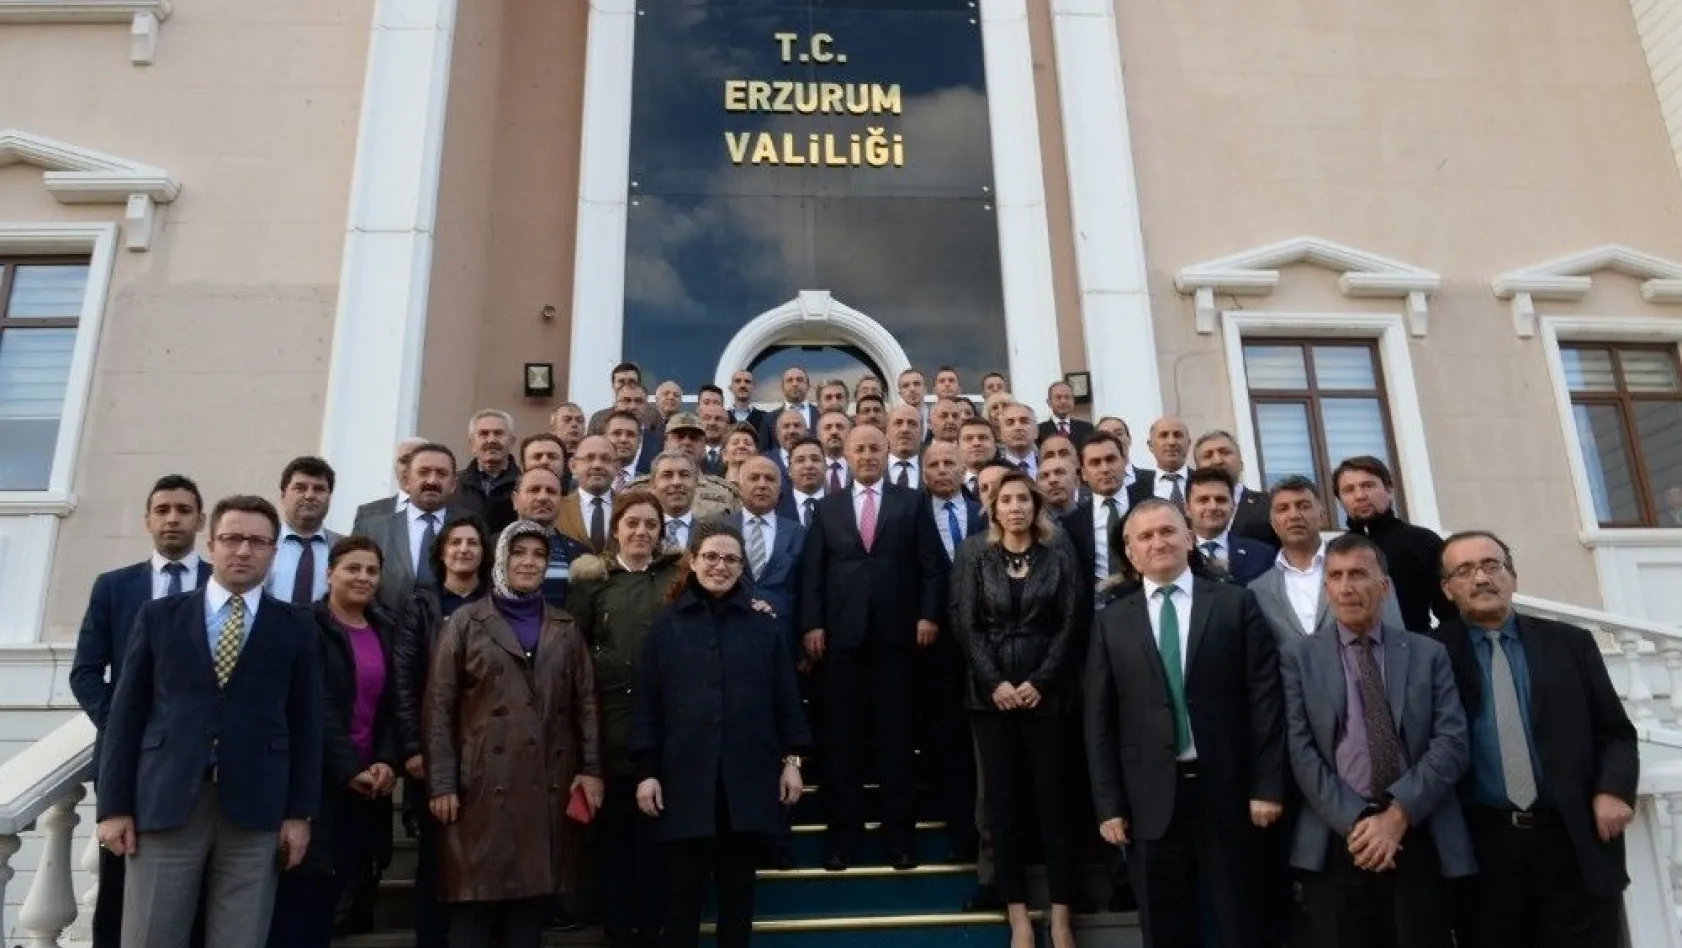 Vali Seyfettin Azizoğlu'ndan veda mesajı: 'Her insana Erzurum'a vali olarak hizmet etmek nasip olmaz'
